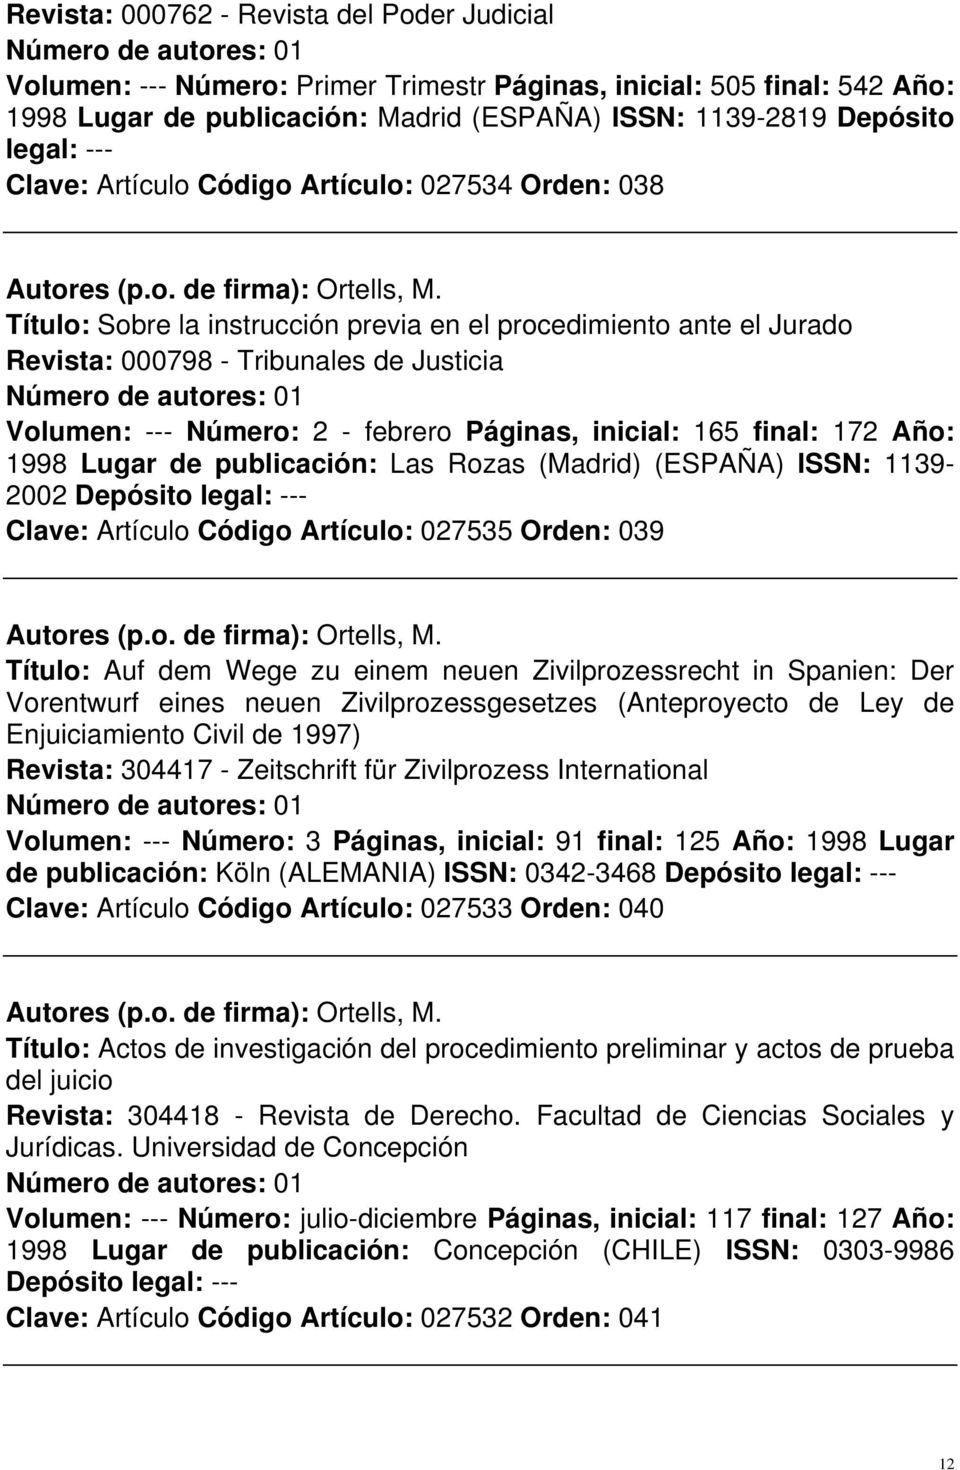 Páginas, inicial: 165 final: 172 Año: 1998 Lugar de publicación: Las Rozas (Madrid) (ESPAÑA) ISSN: 1139-2002 Depósito legal: --- Clave: Artículo Código Artículo: 027535 Orden: 039 Título: Auf dem